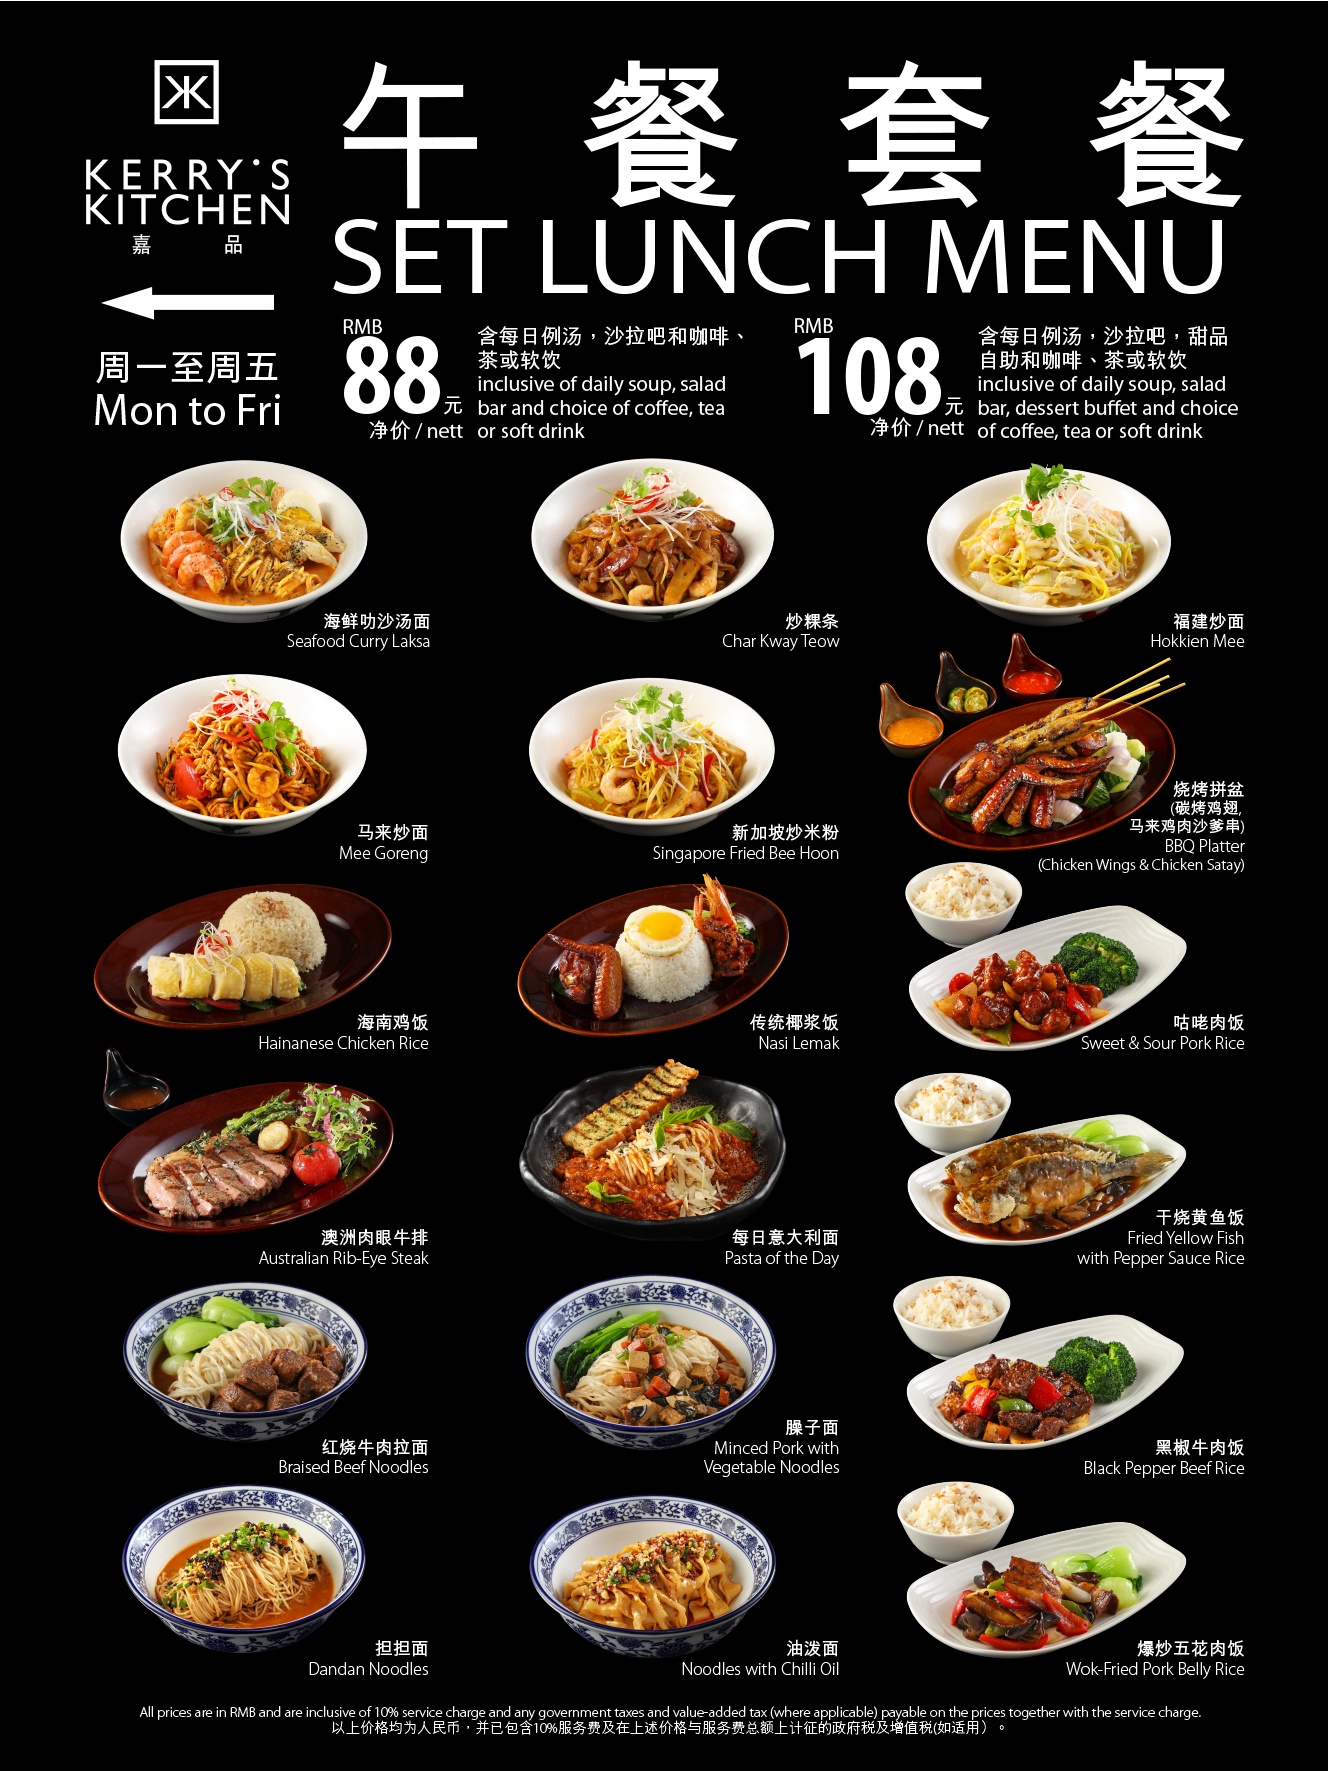 北京嘉里大酒店推出商务午餐套餐